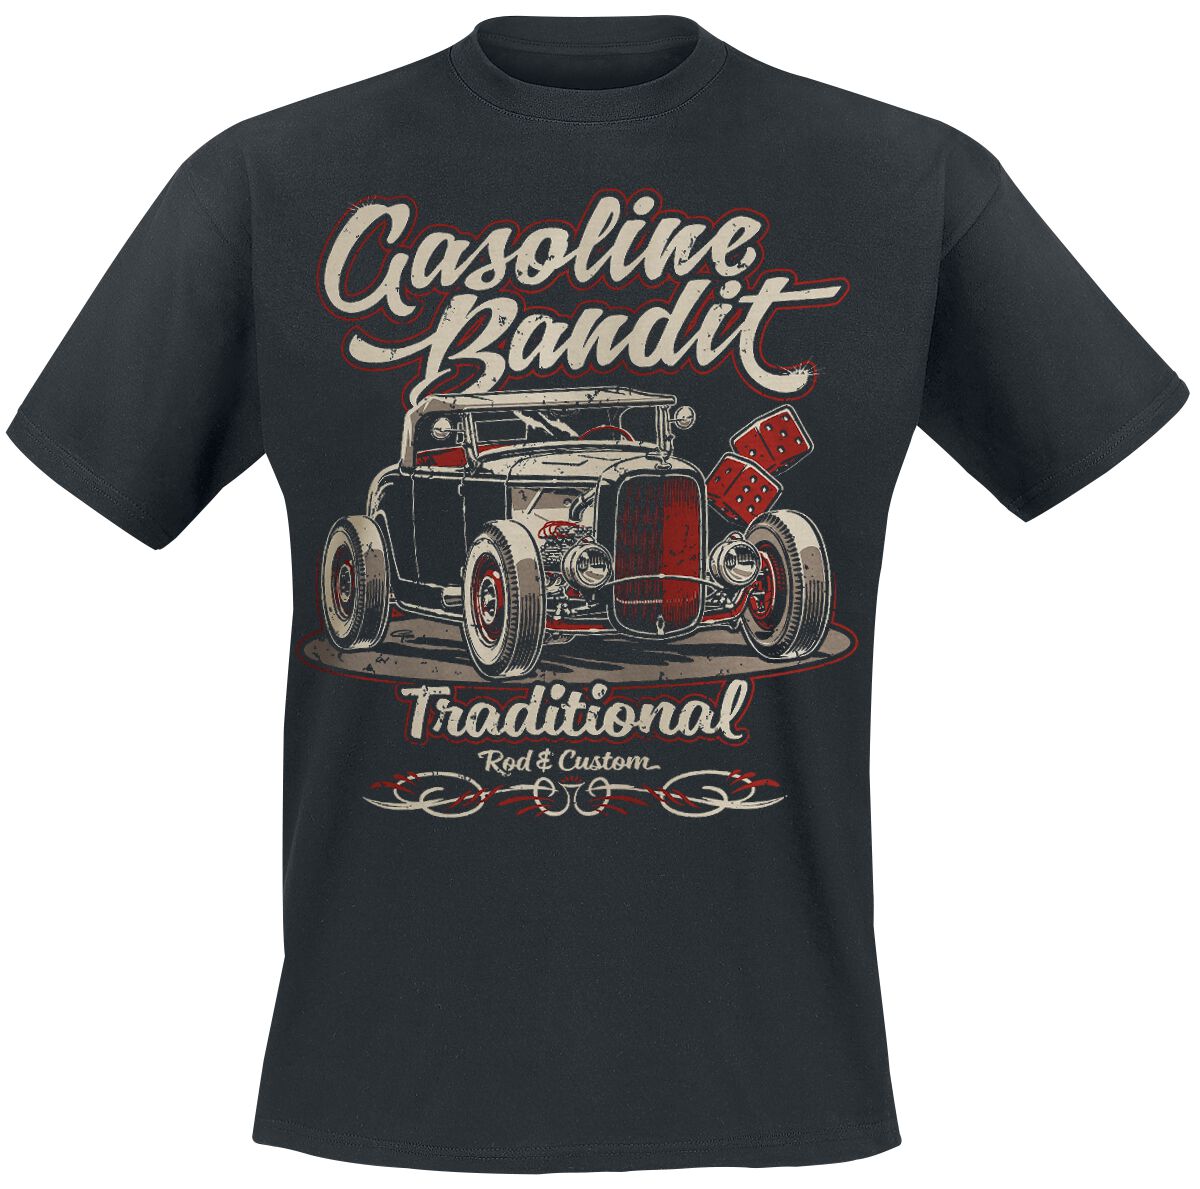 Gasoline Bandit Traditional T-Shirt schwarz in M